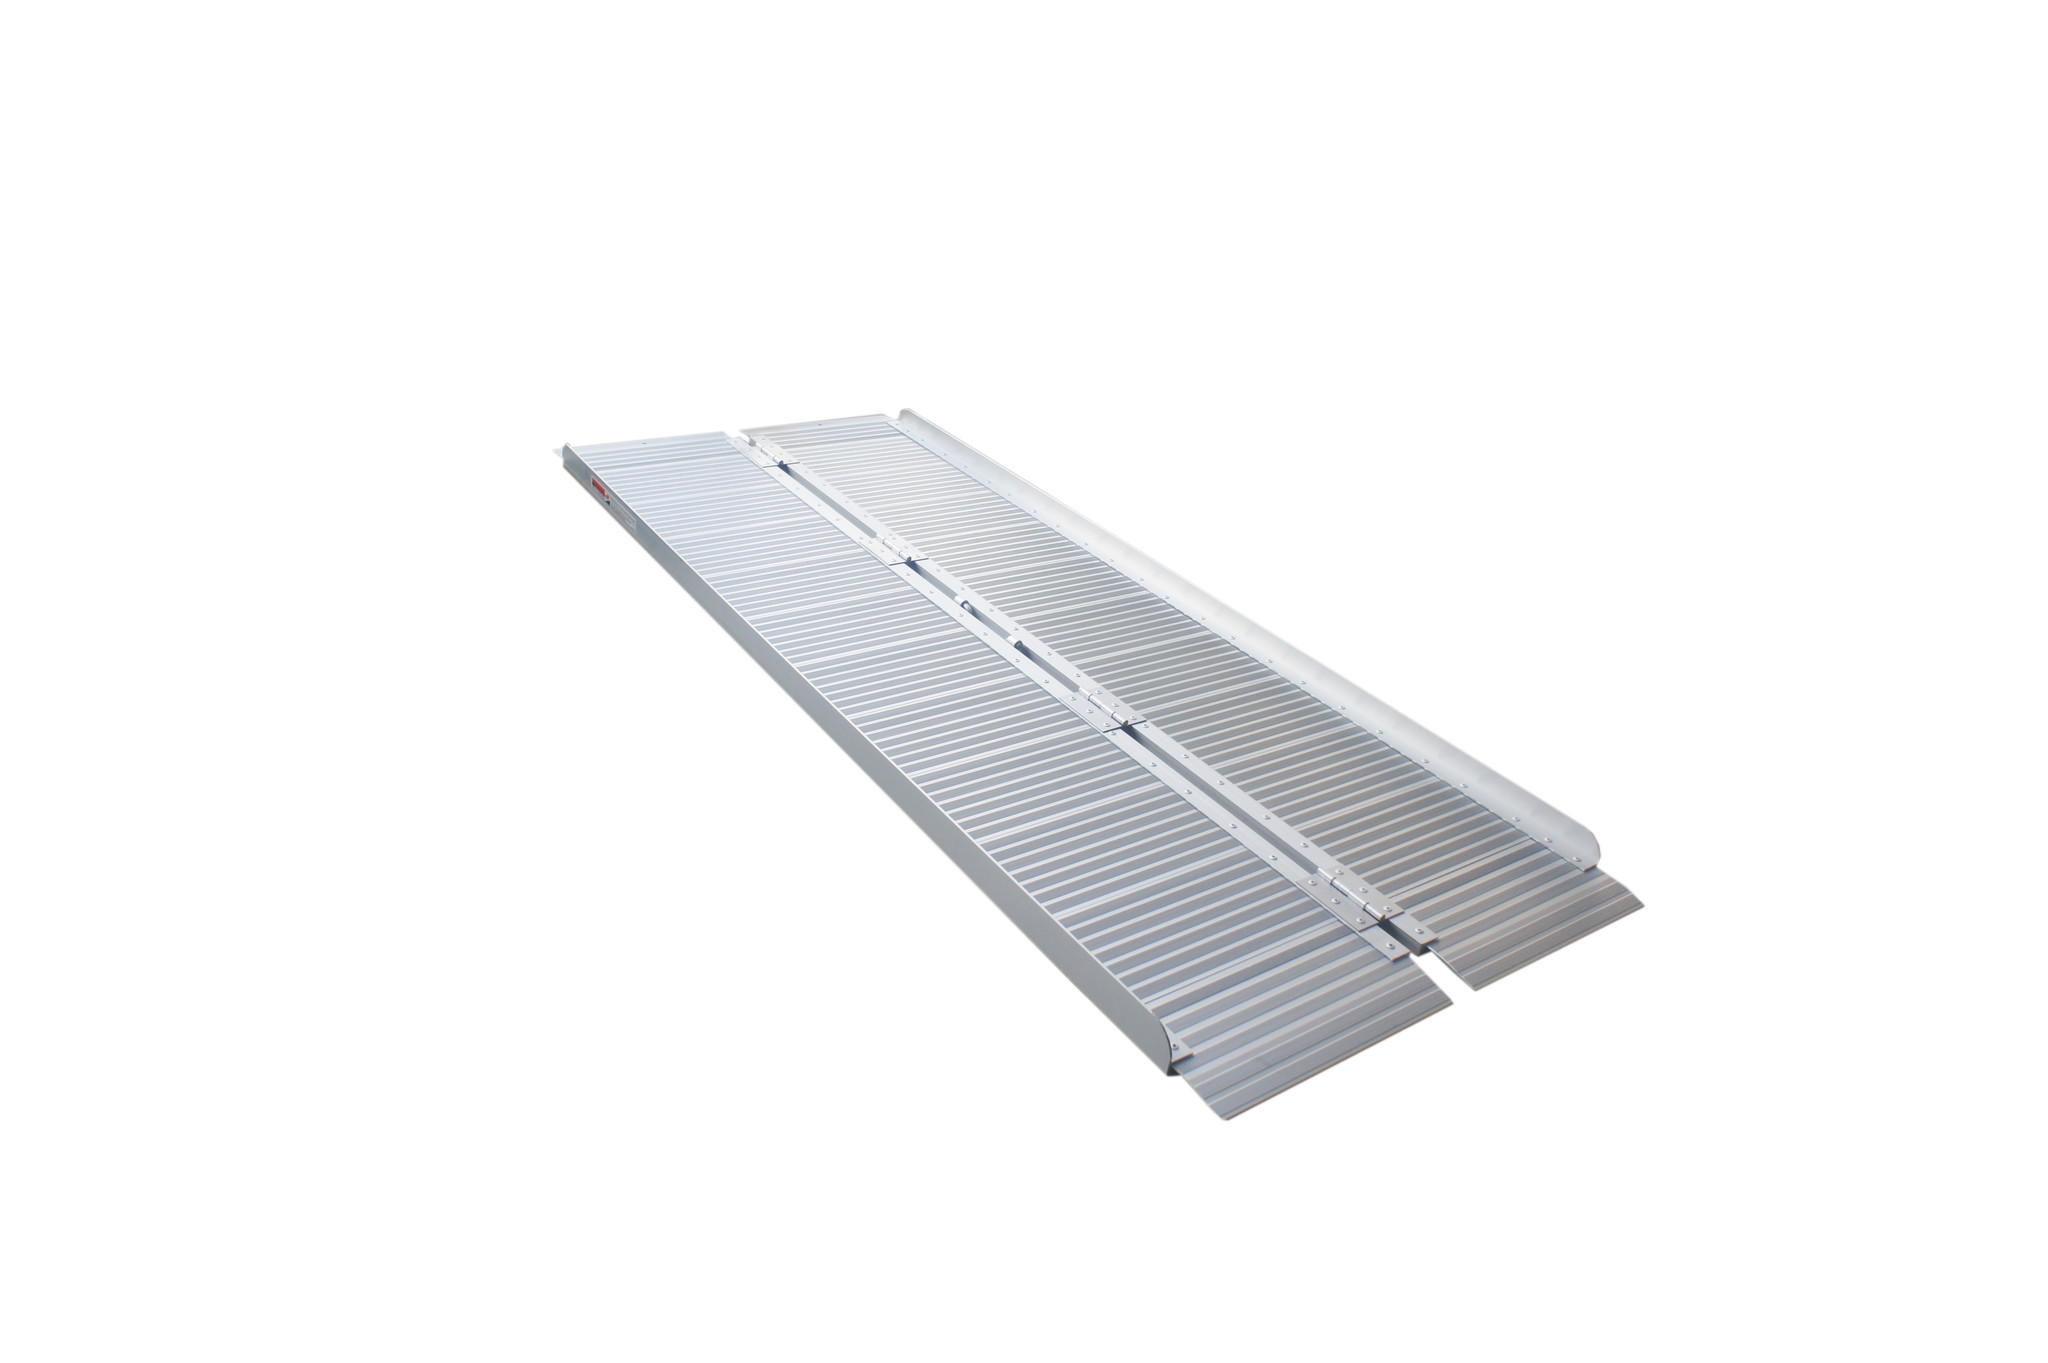 Portable ramp 182 cm in aluminium